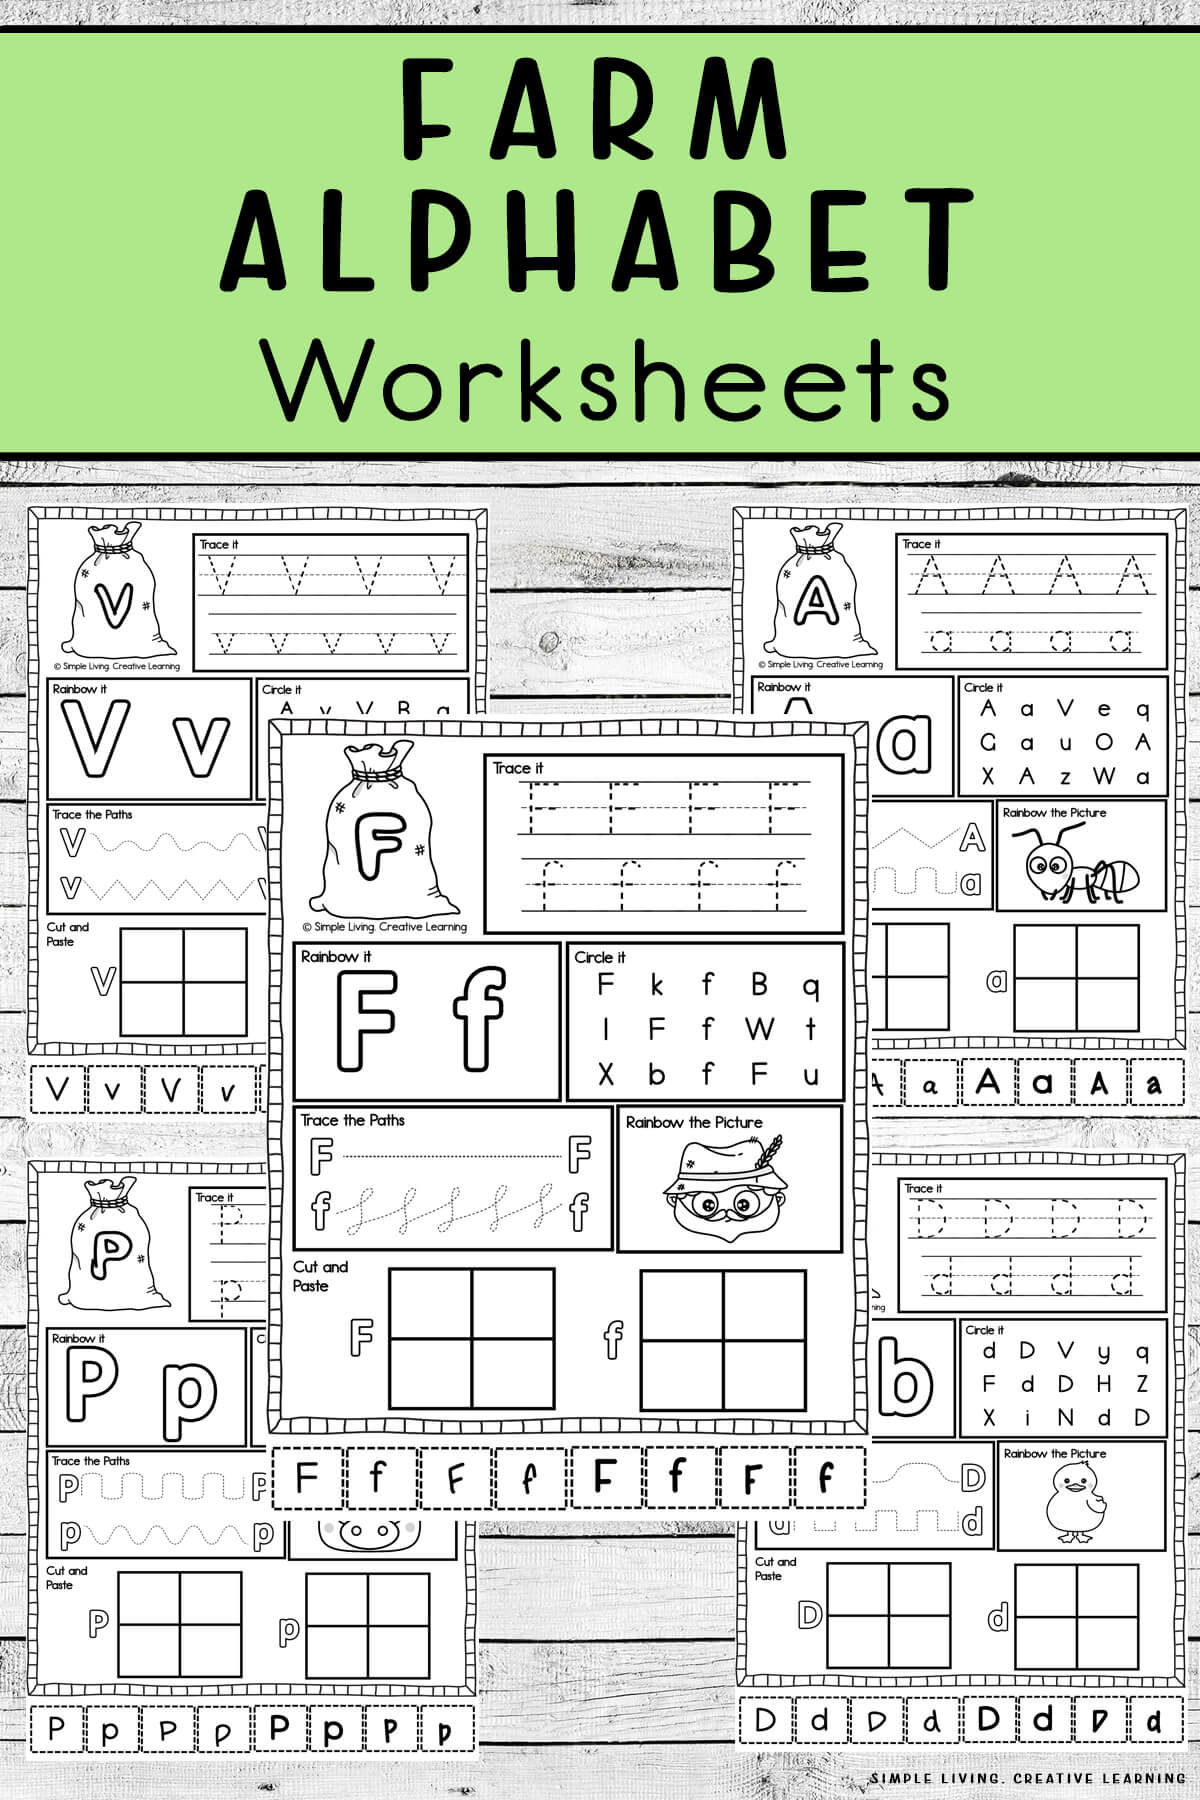 Farm Alphabet Worksheets